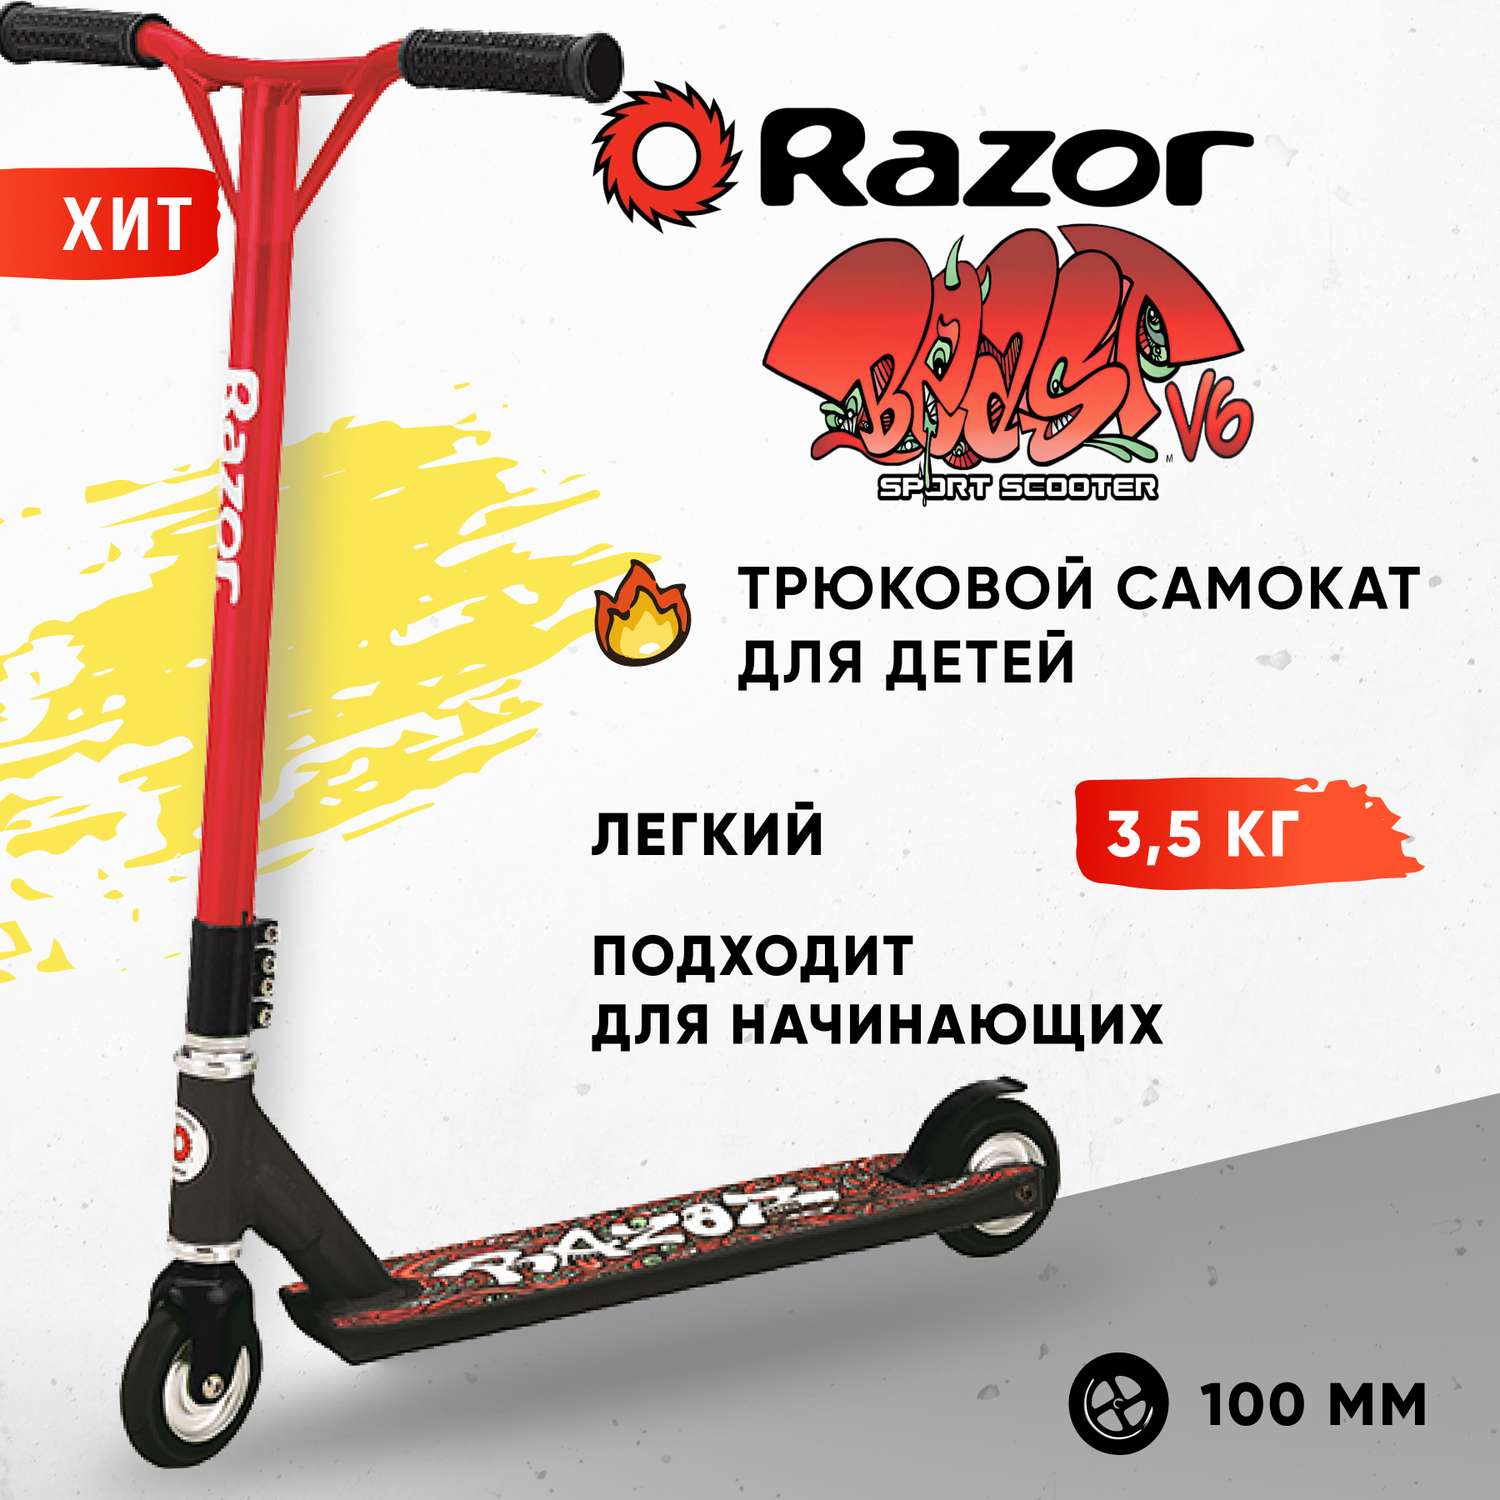 Самокат трюковой детский RAZOR Beast V6 красно-чёрный - для трюков и прыжков экстремальный для начинающих - фото 1